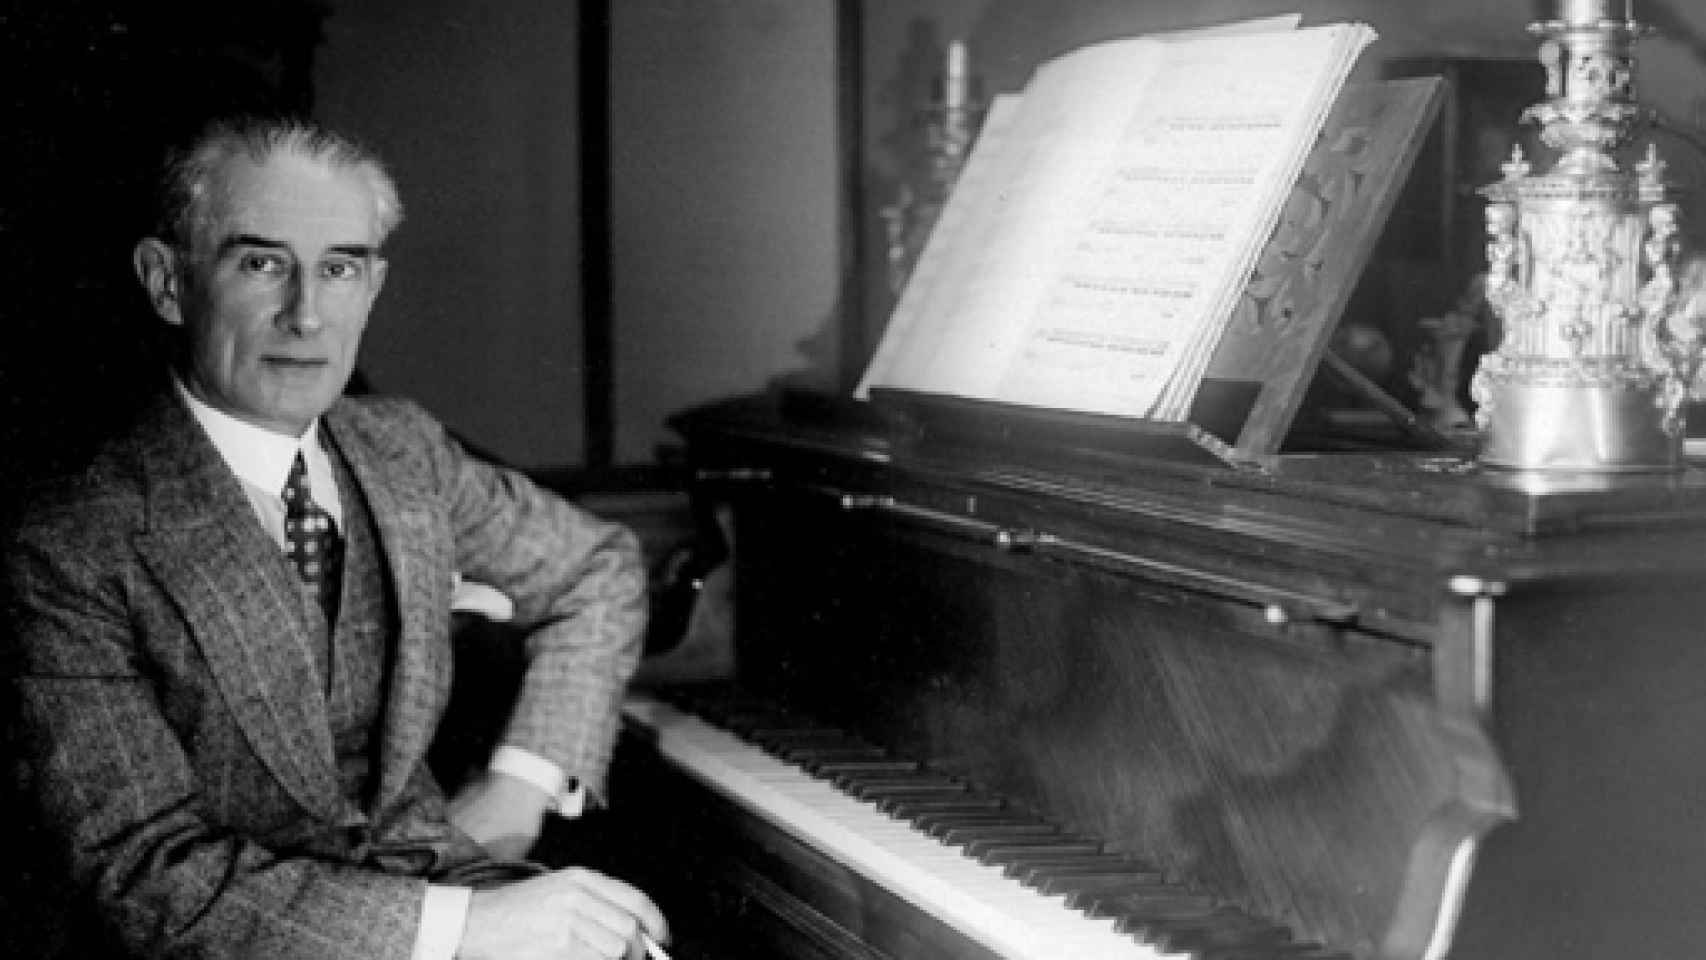 Image: Músicos con querencia española: Beethoven, Ravel, el taurino